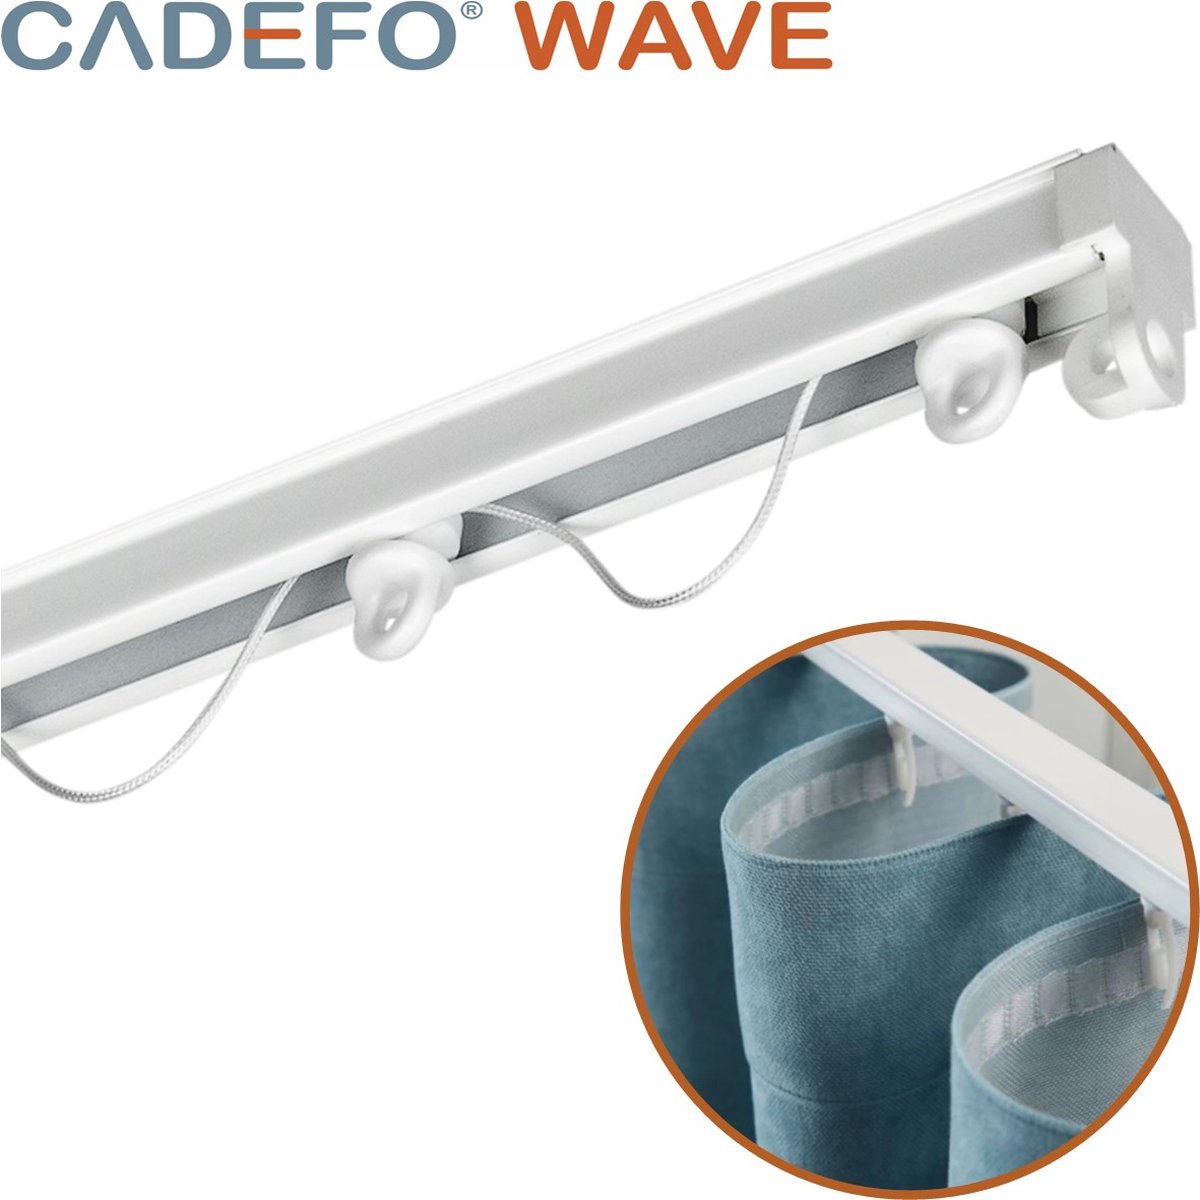 CADEFO WAVE (251 - 300 cm) Gordijnrails - Compleet op maat! - UIT 1 STUK - Leverbaar tot 6 meter - Plafondbevestiging - Lengte 284 cm